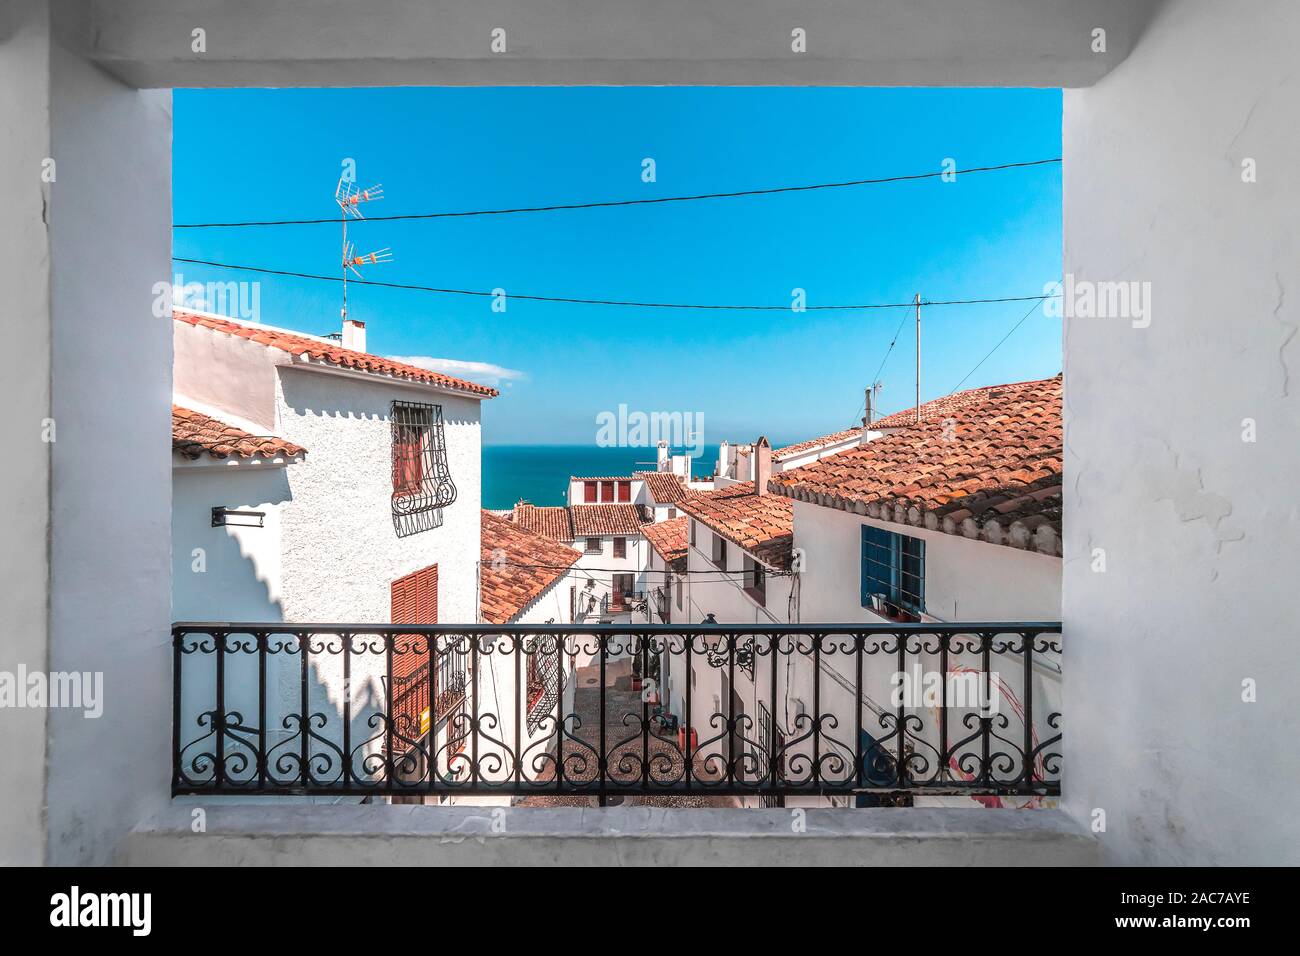 La vista dalla terrazza per le case bianche con tetti di tegole. La cittadina di Altea nel sud-est della Spagna, Apr.2019 Foto Stock